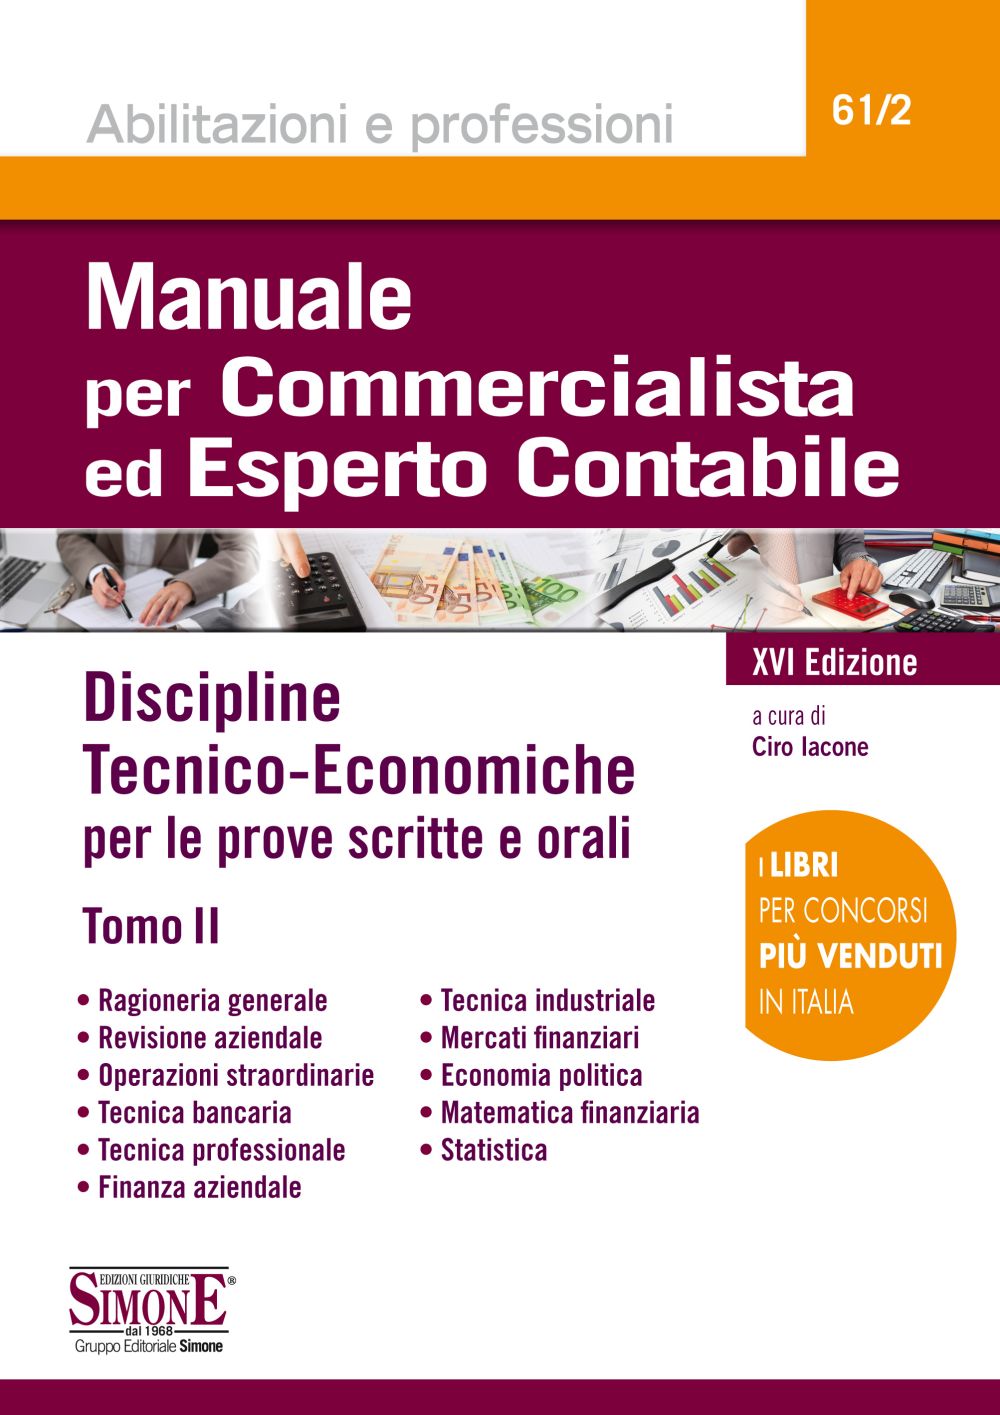 Manuale per Commercialista ed Esperto Contabile - Discipline Tecnico-Economiche - Tomo II